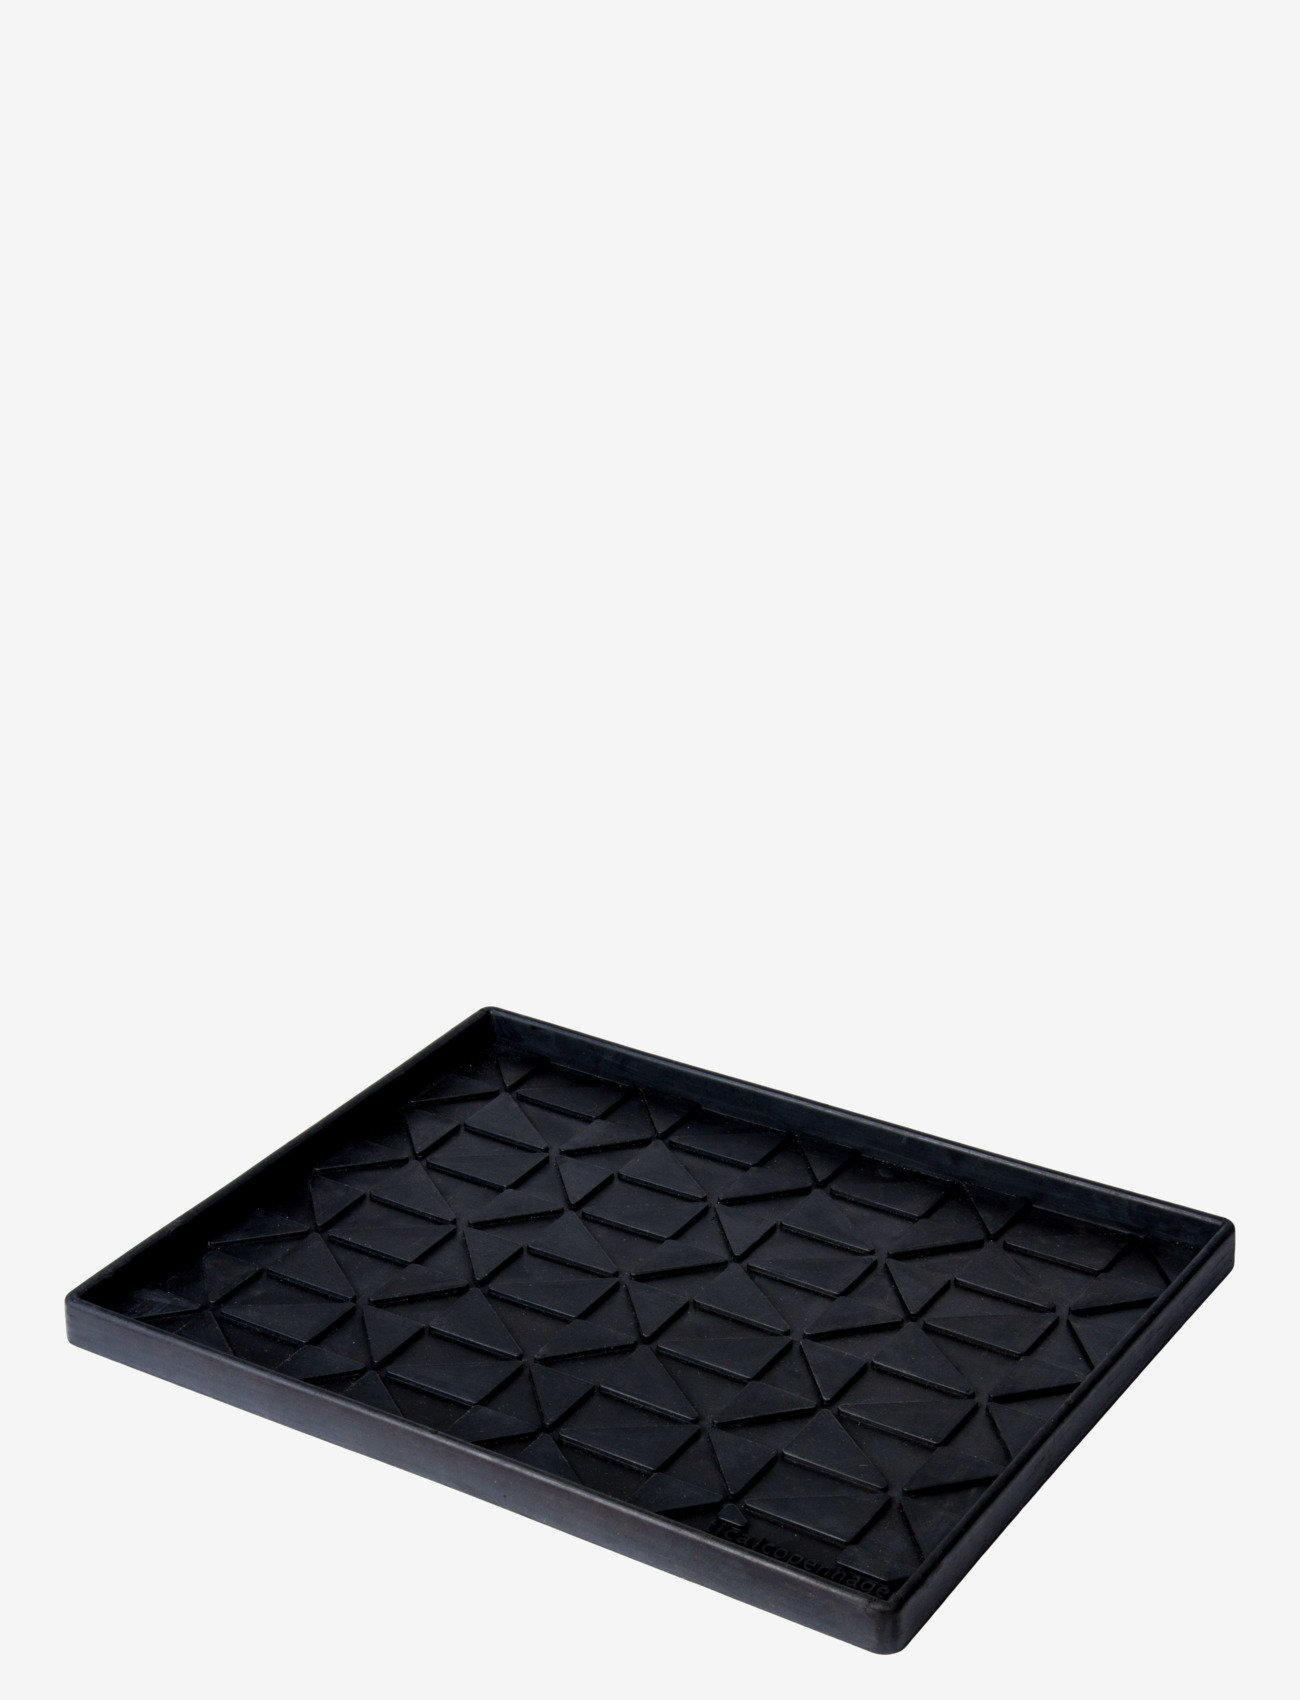 tica copenhagen - Shoe and boot tray rubber, M:48x38x3 cm - laveste priser - graphic design - 1